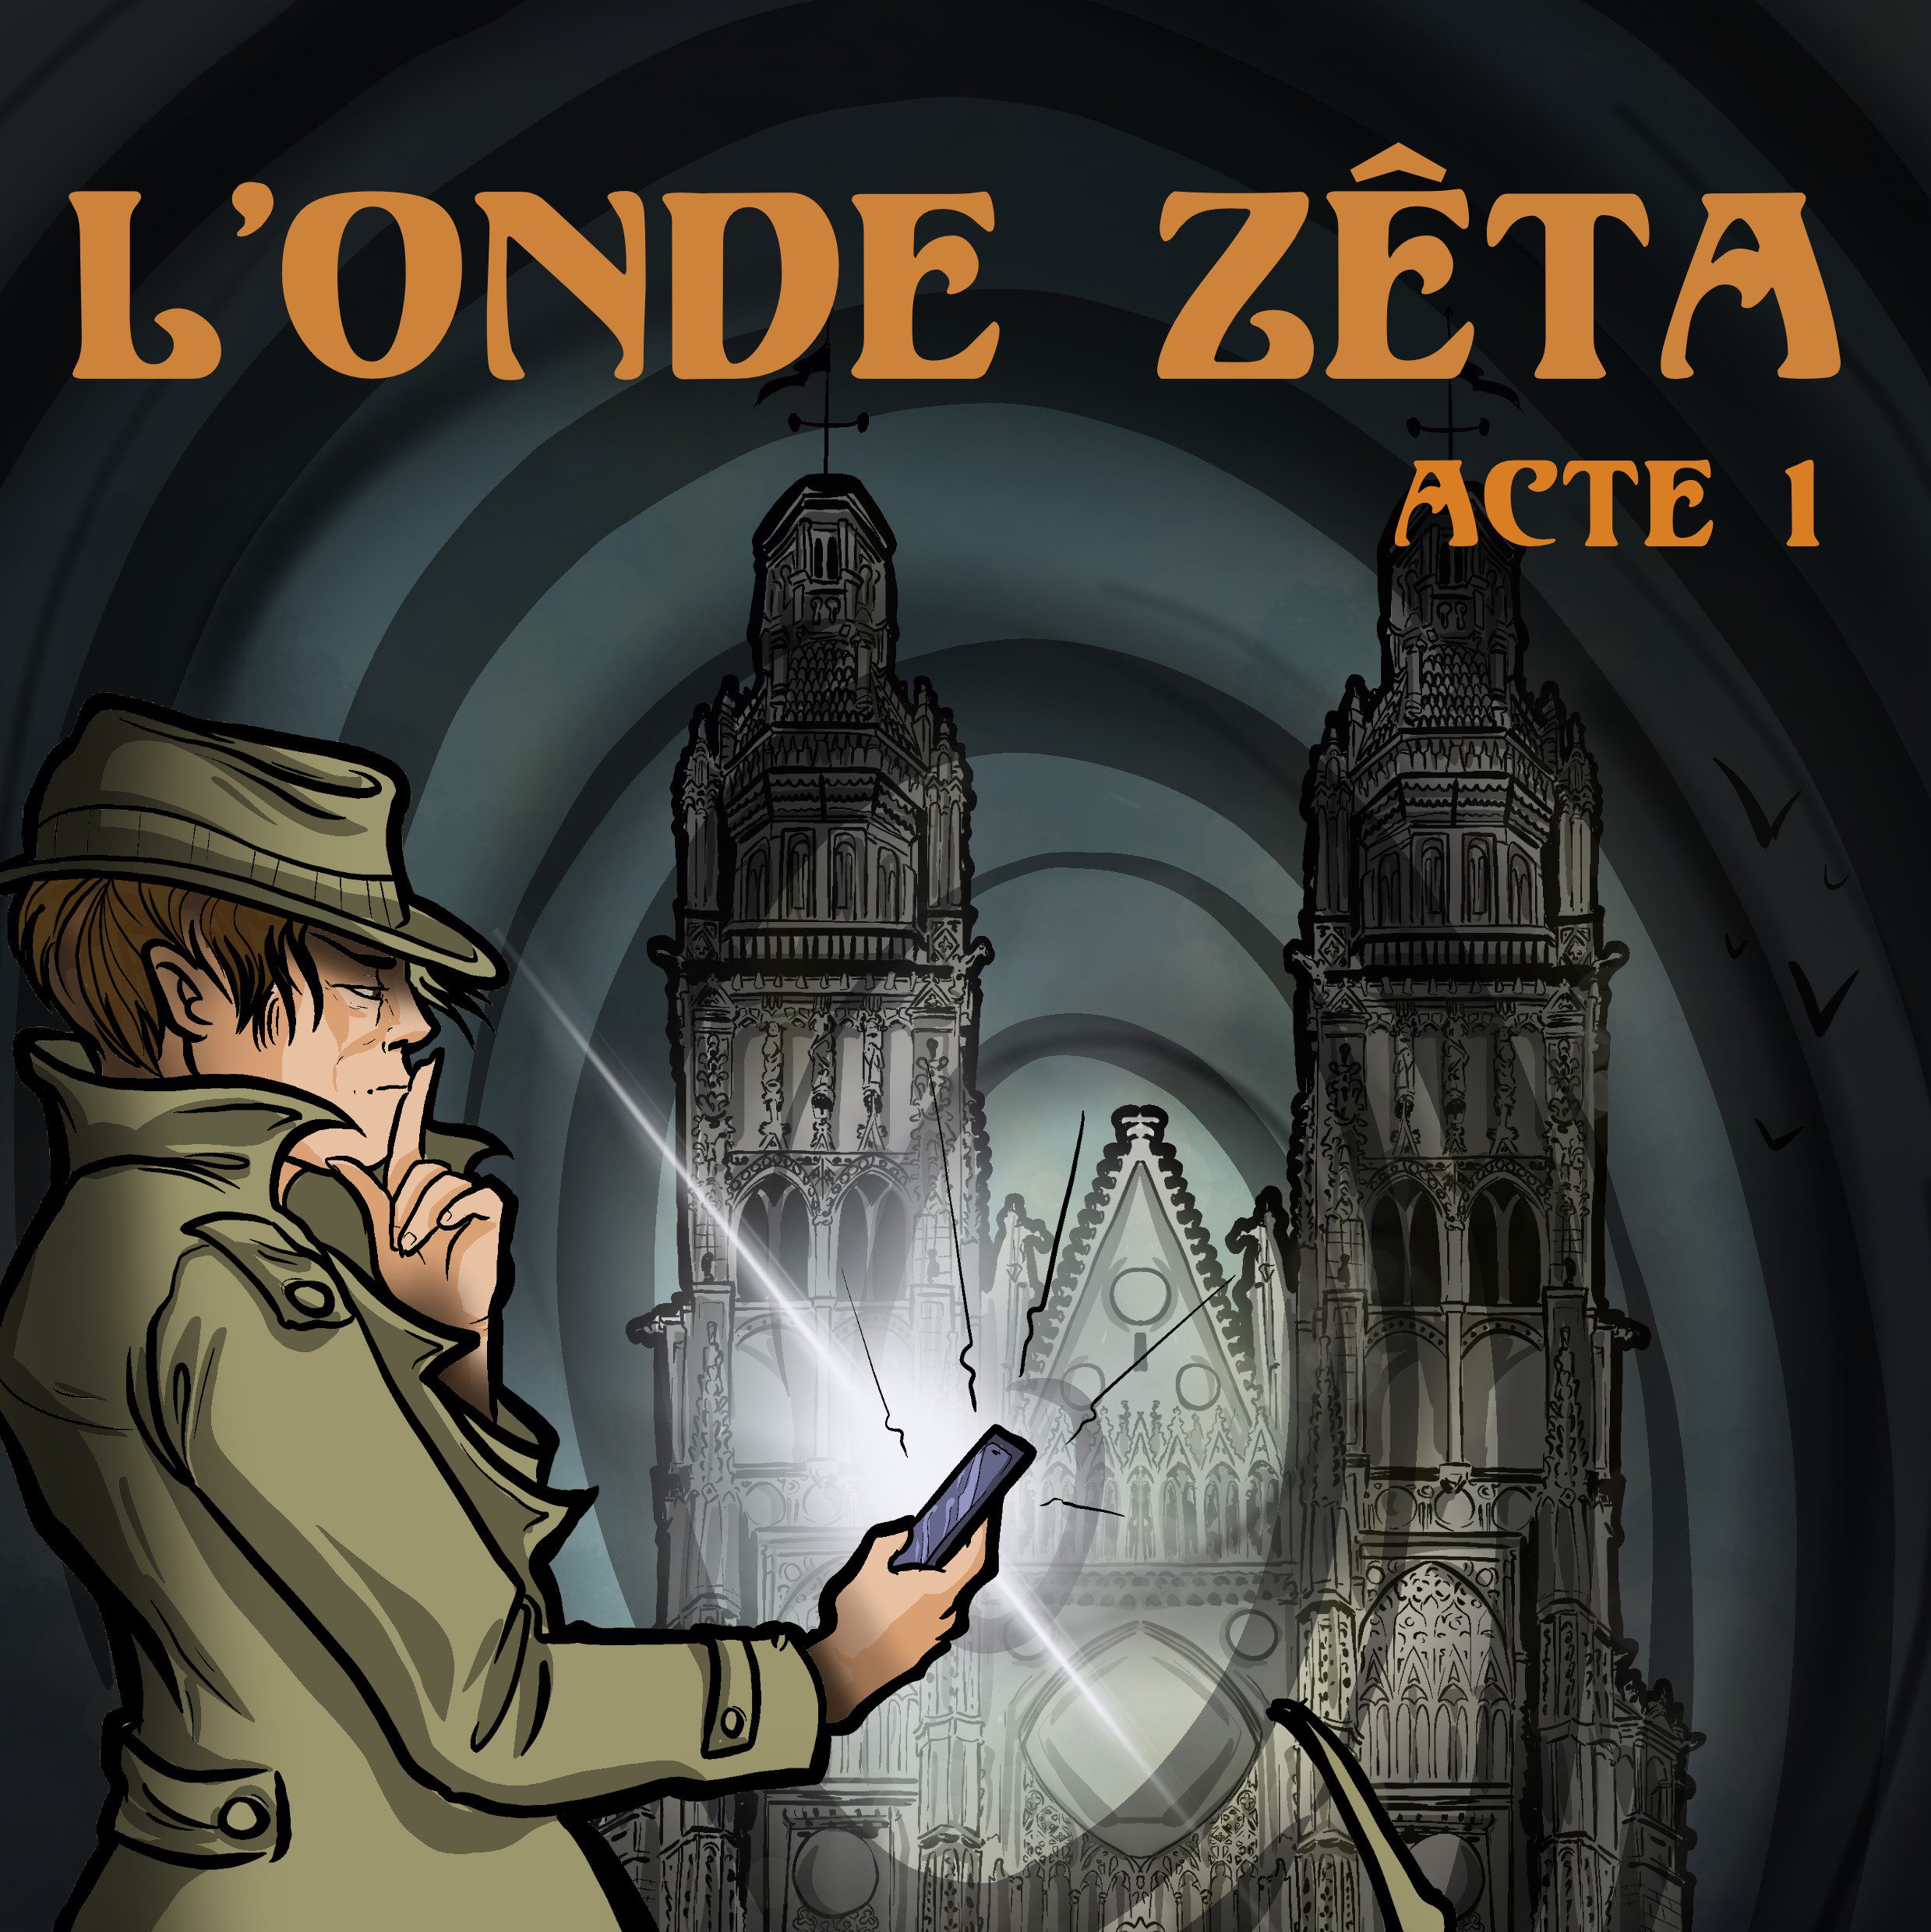 Image d'illustration de l'escape game L'Onde Zeta